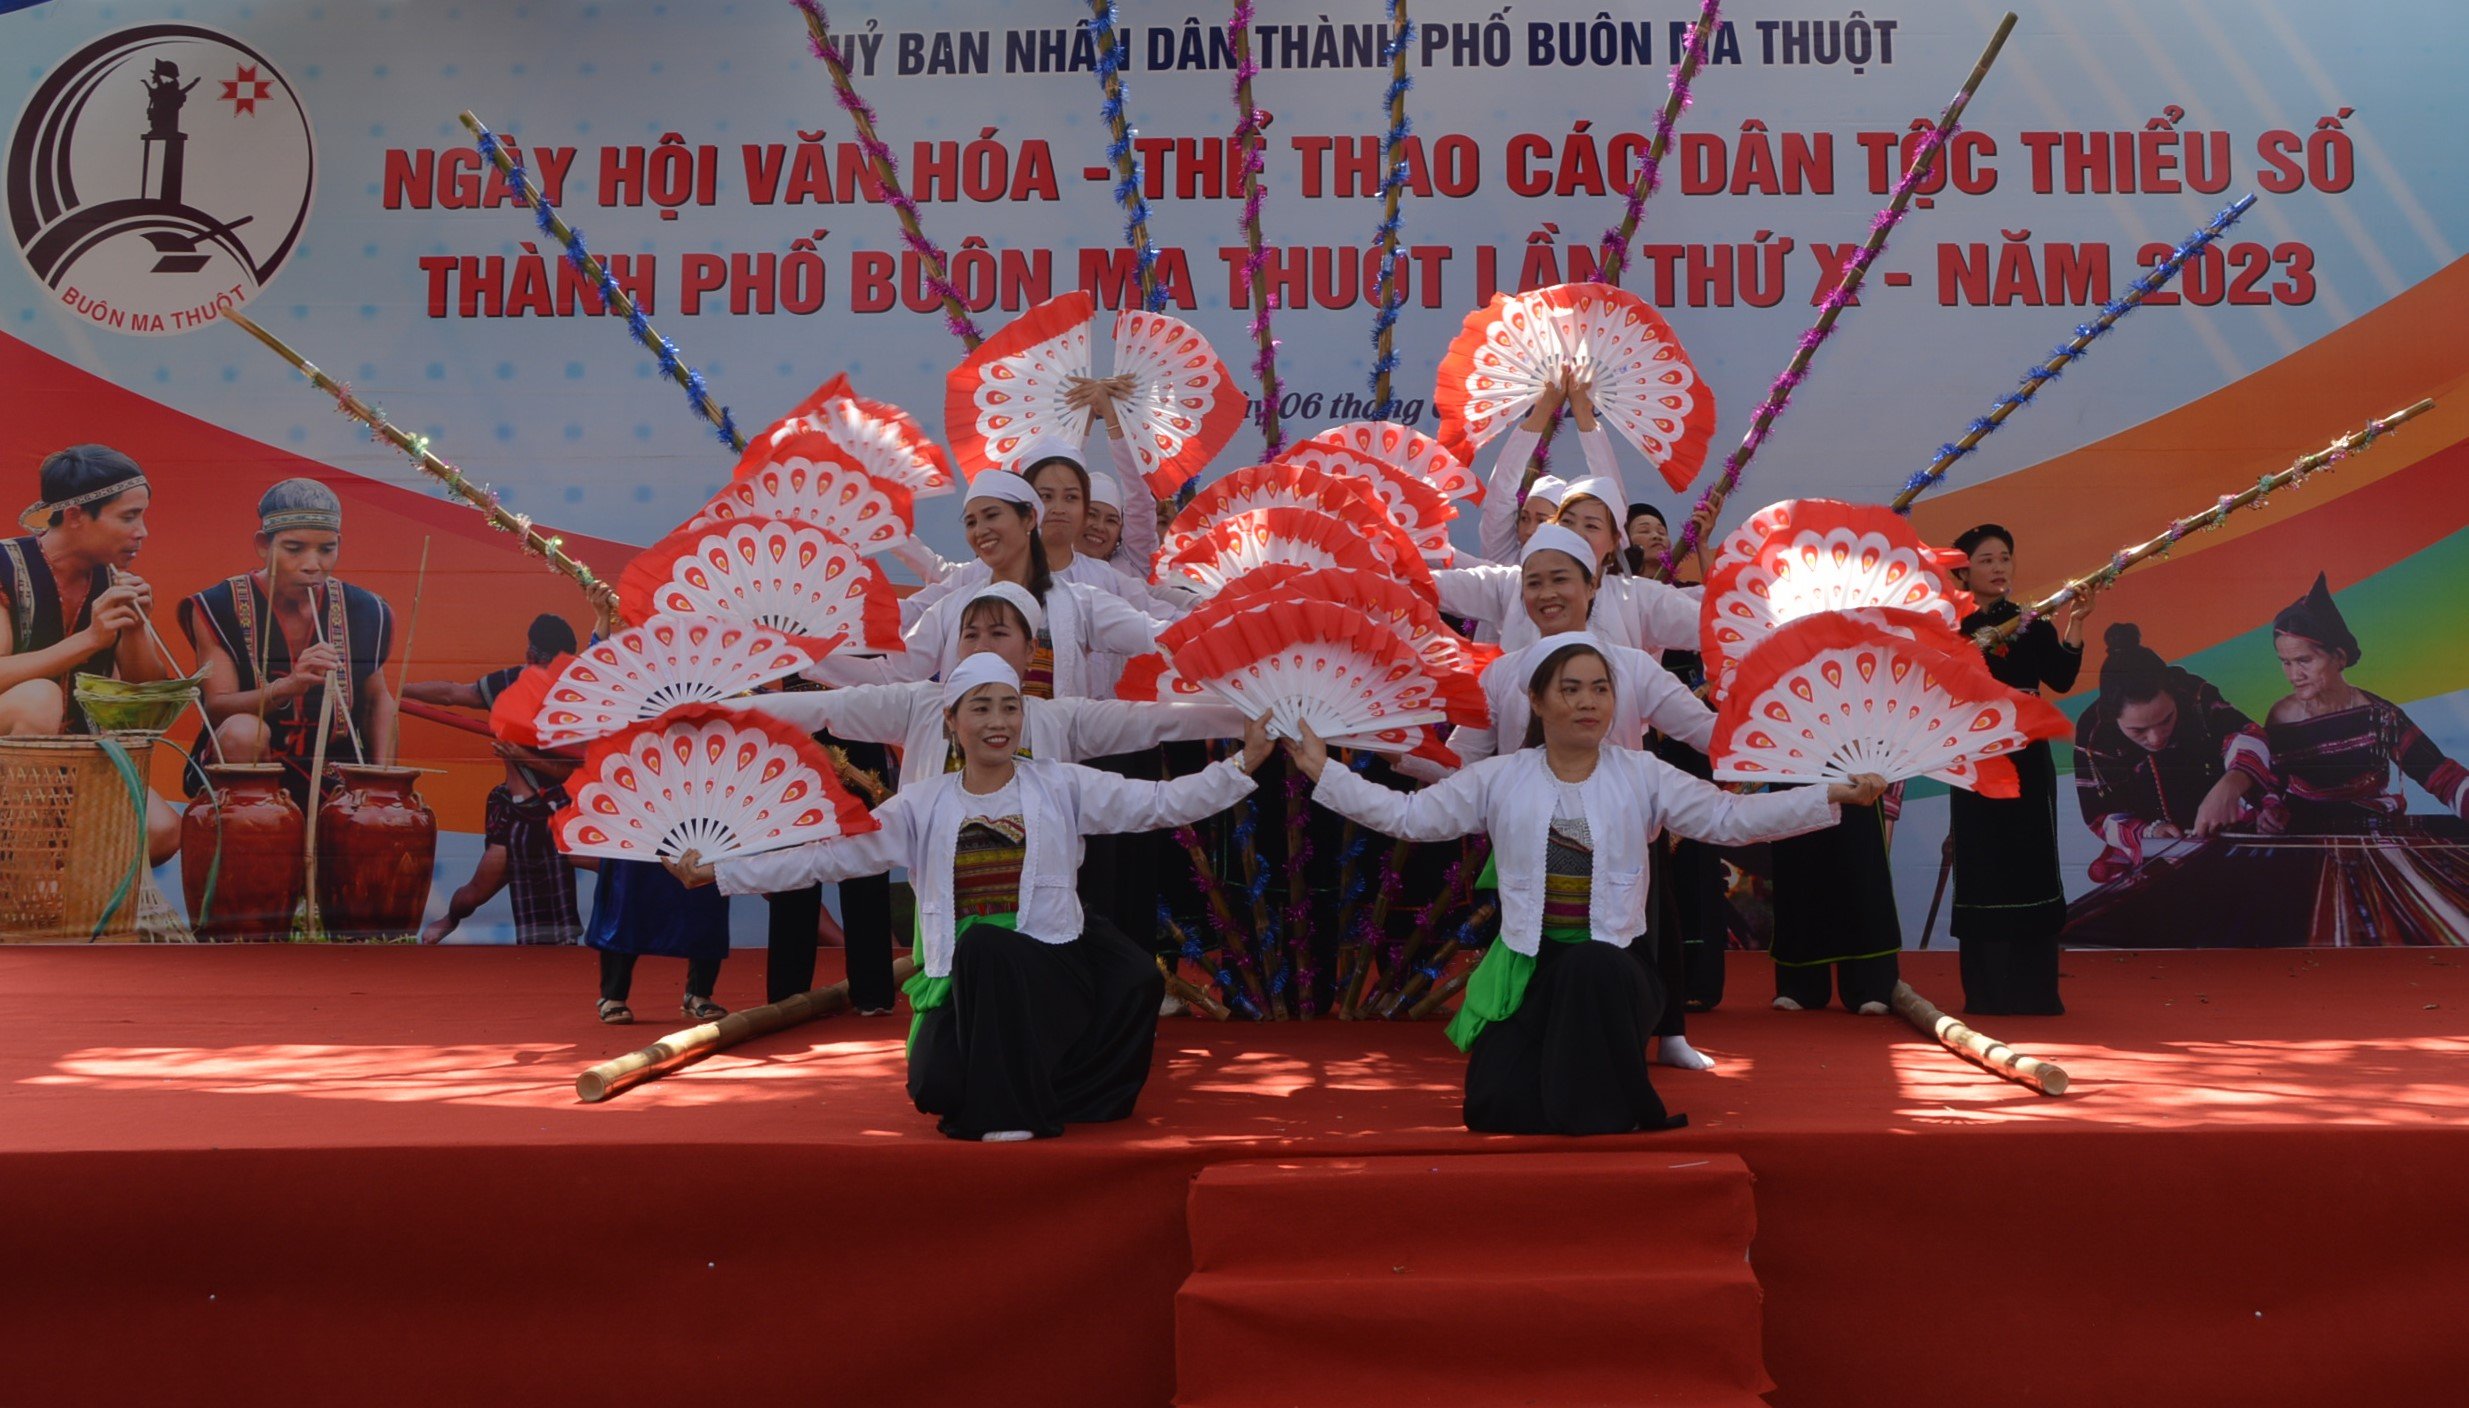 Khai mạc Ngày hội Văn hóa - Thể thao đồng bào các dân tộc thiểu số thành phố Buôn Ma Thuột lần thứ X năm 2023.